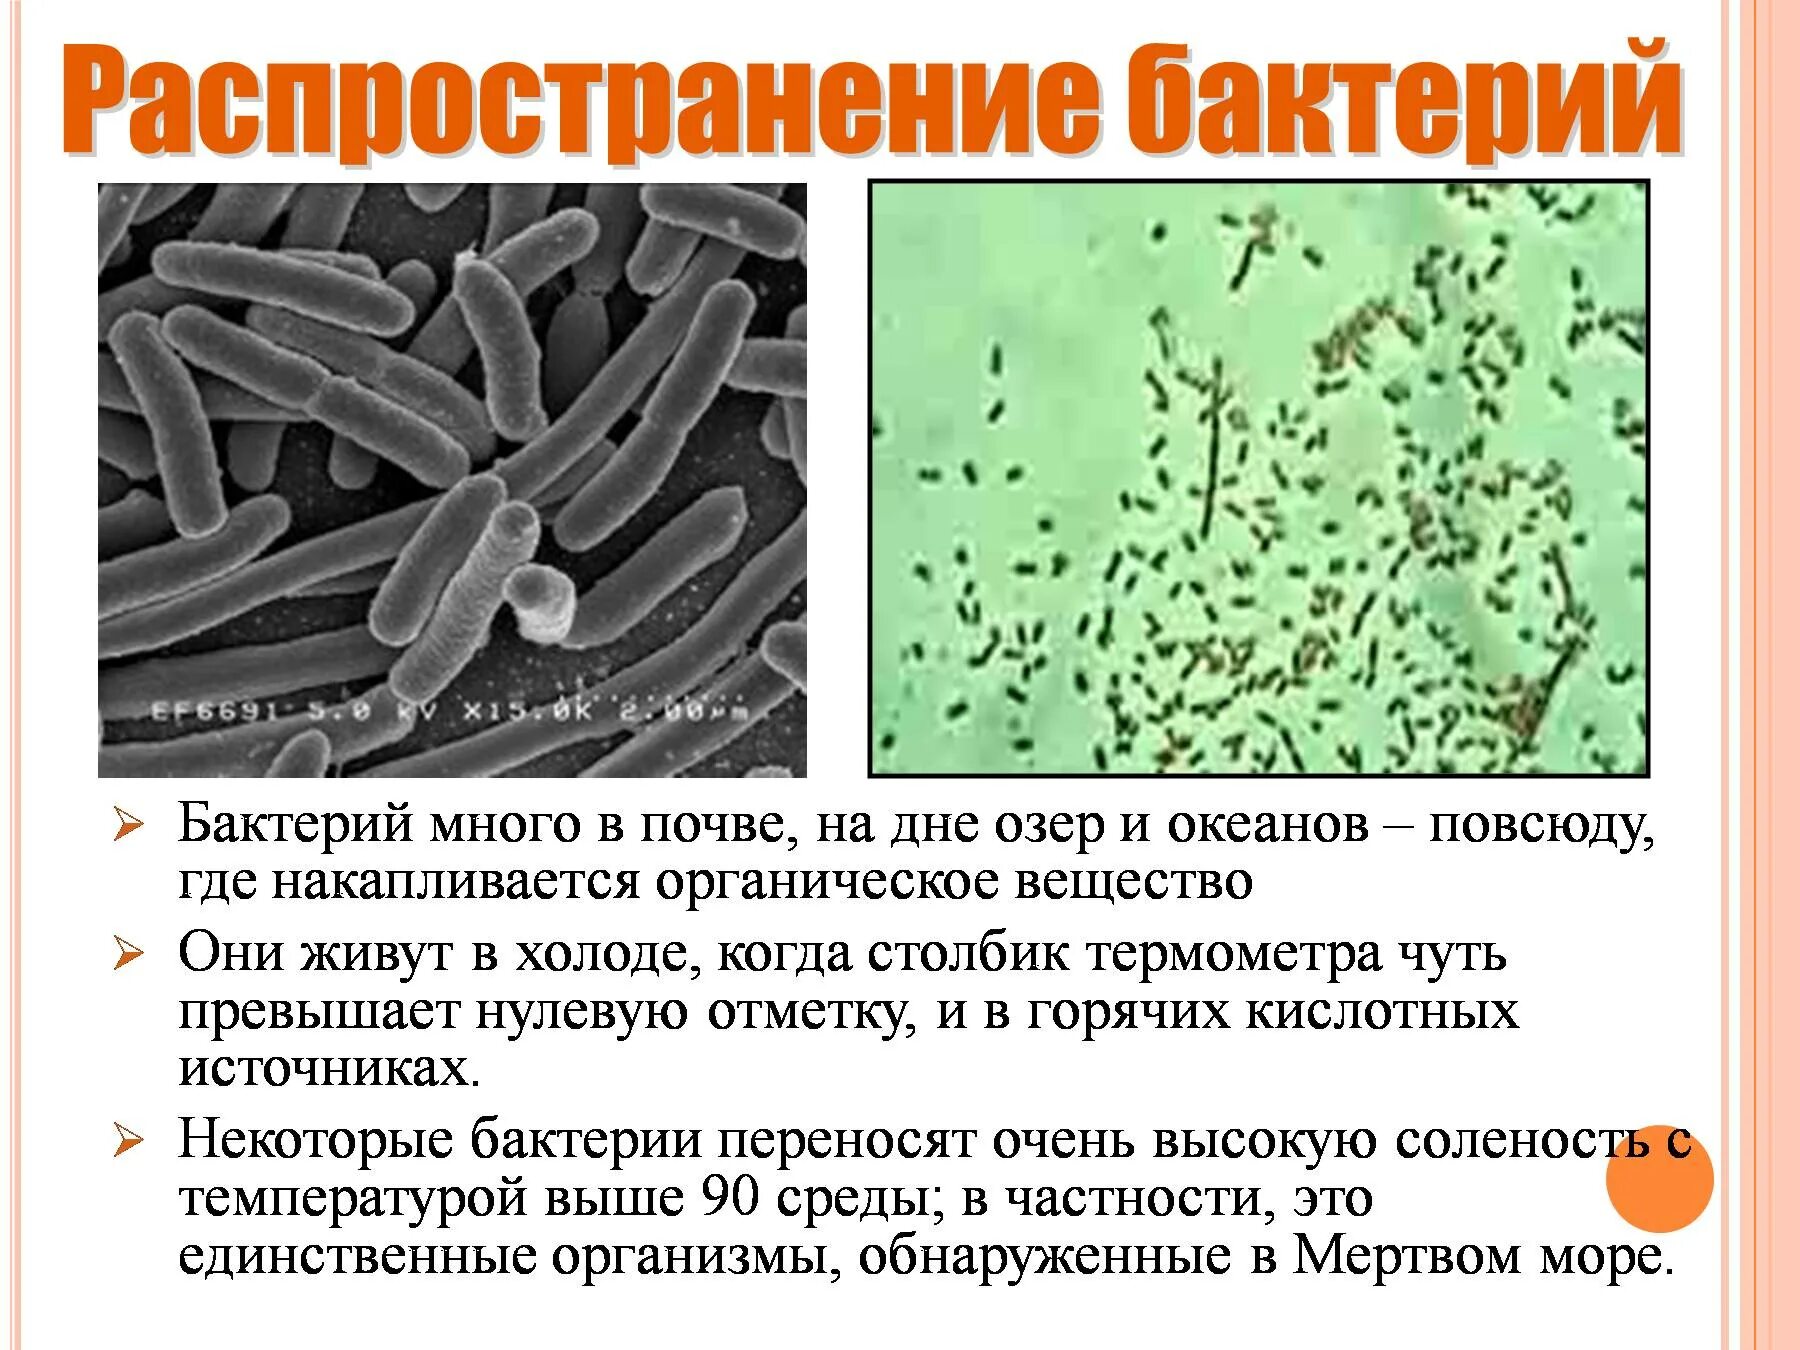 Царство бактерий 5 класс биология. Представители царства бактерий 5 класс. Характеристика царства бактерий 5 класс. Характеристика бактерий 5 класс биология.